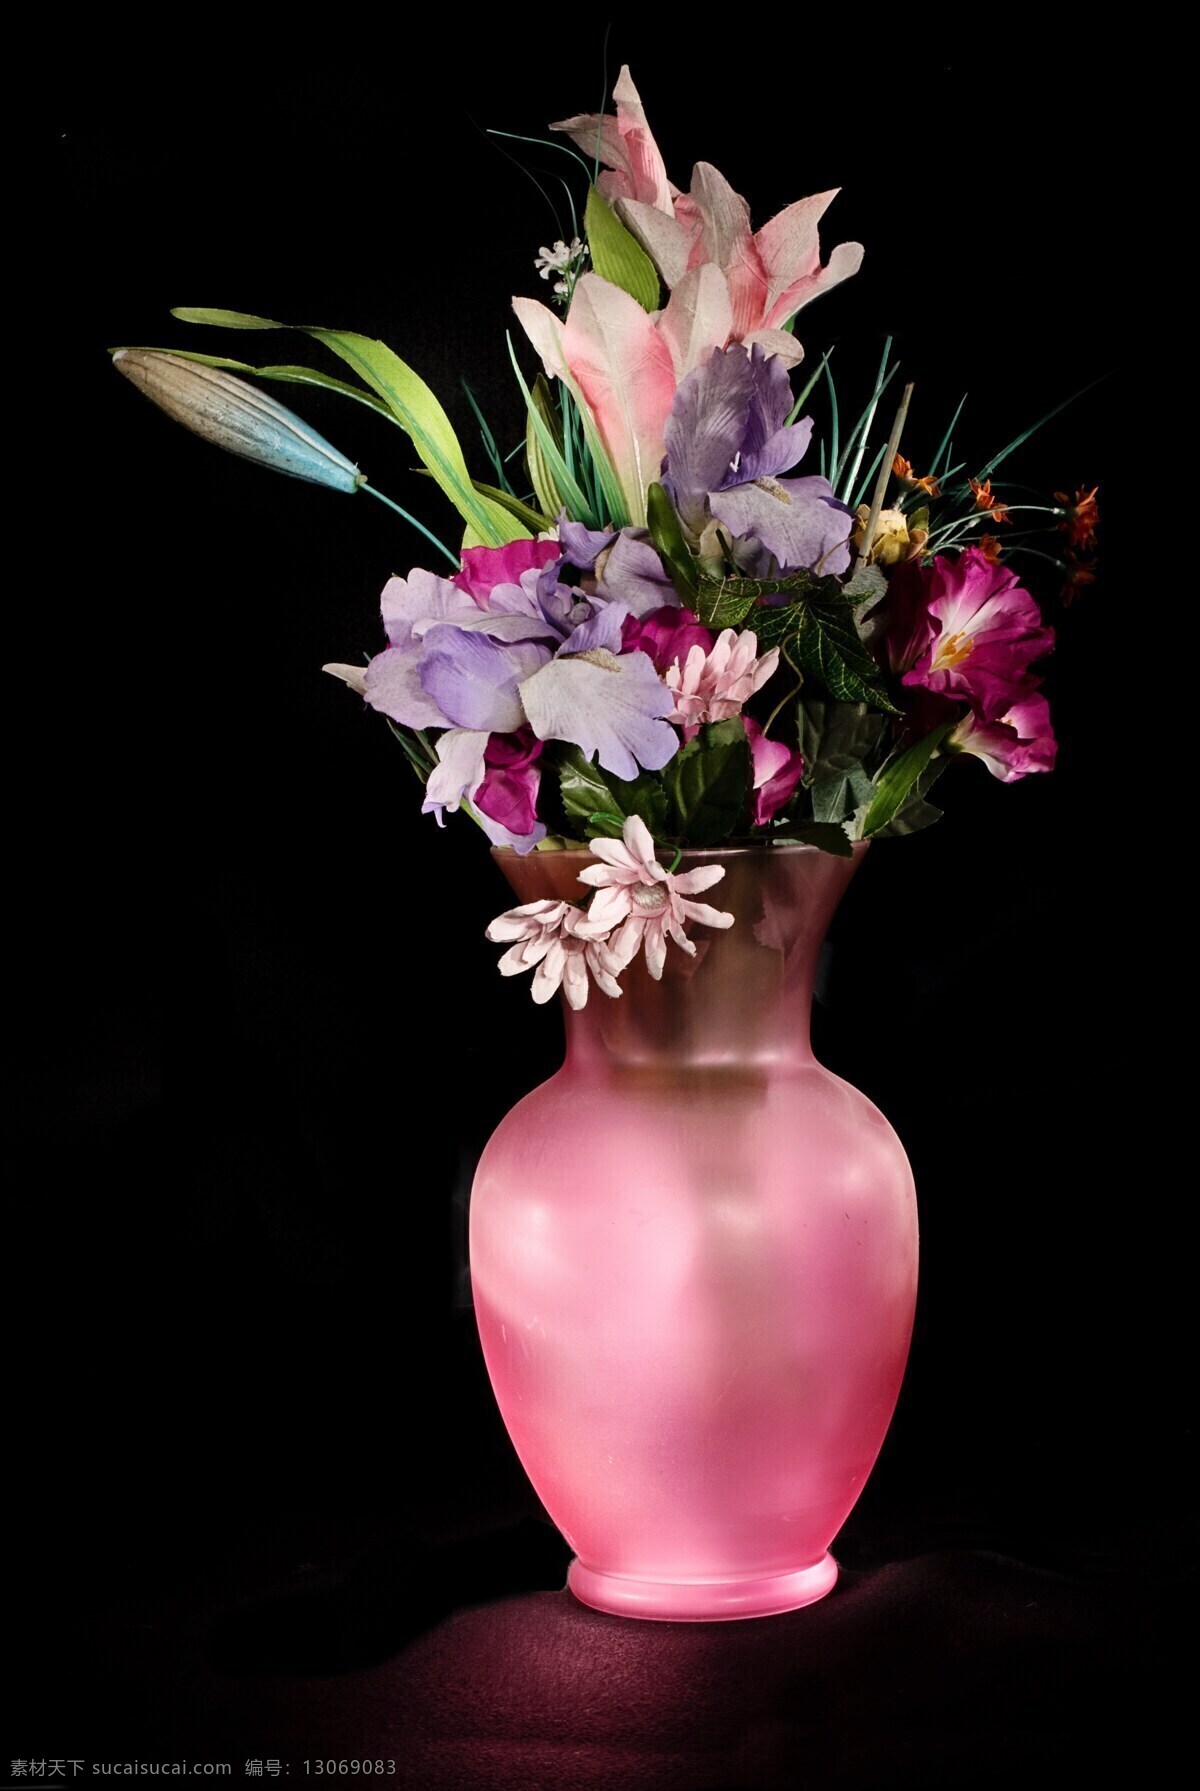 花瓶花束 花瓶 花束 花卉 花朵